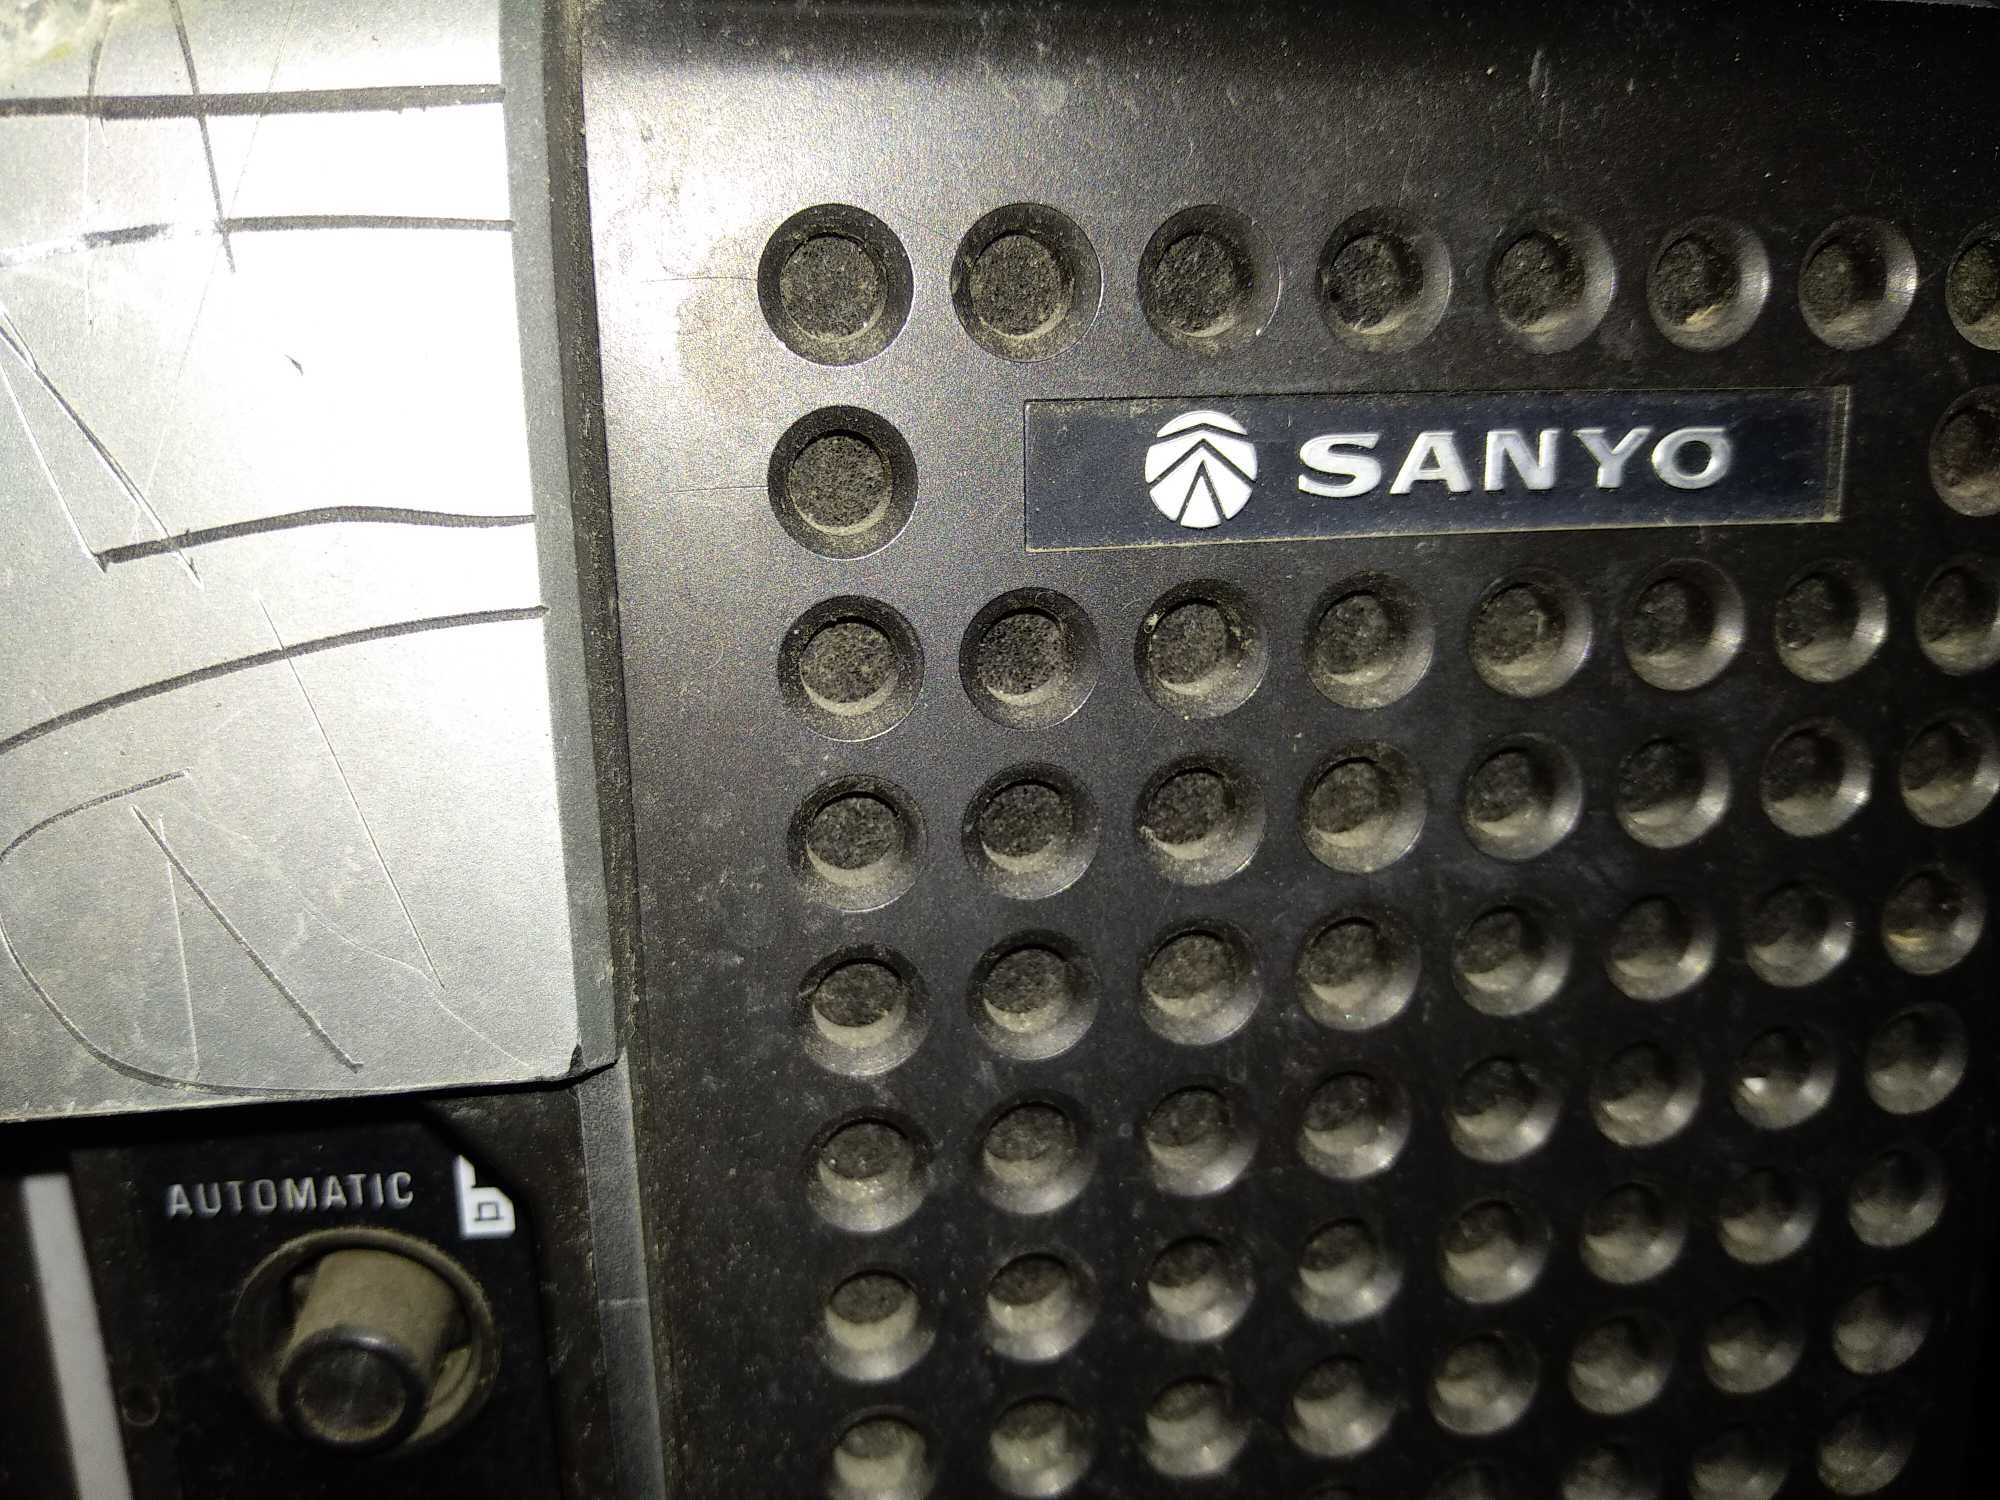 Телевізор Sanyo 11111111111111111111111111111111111111111111111